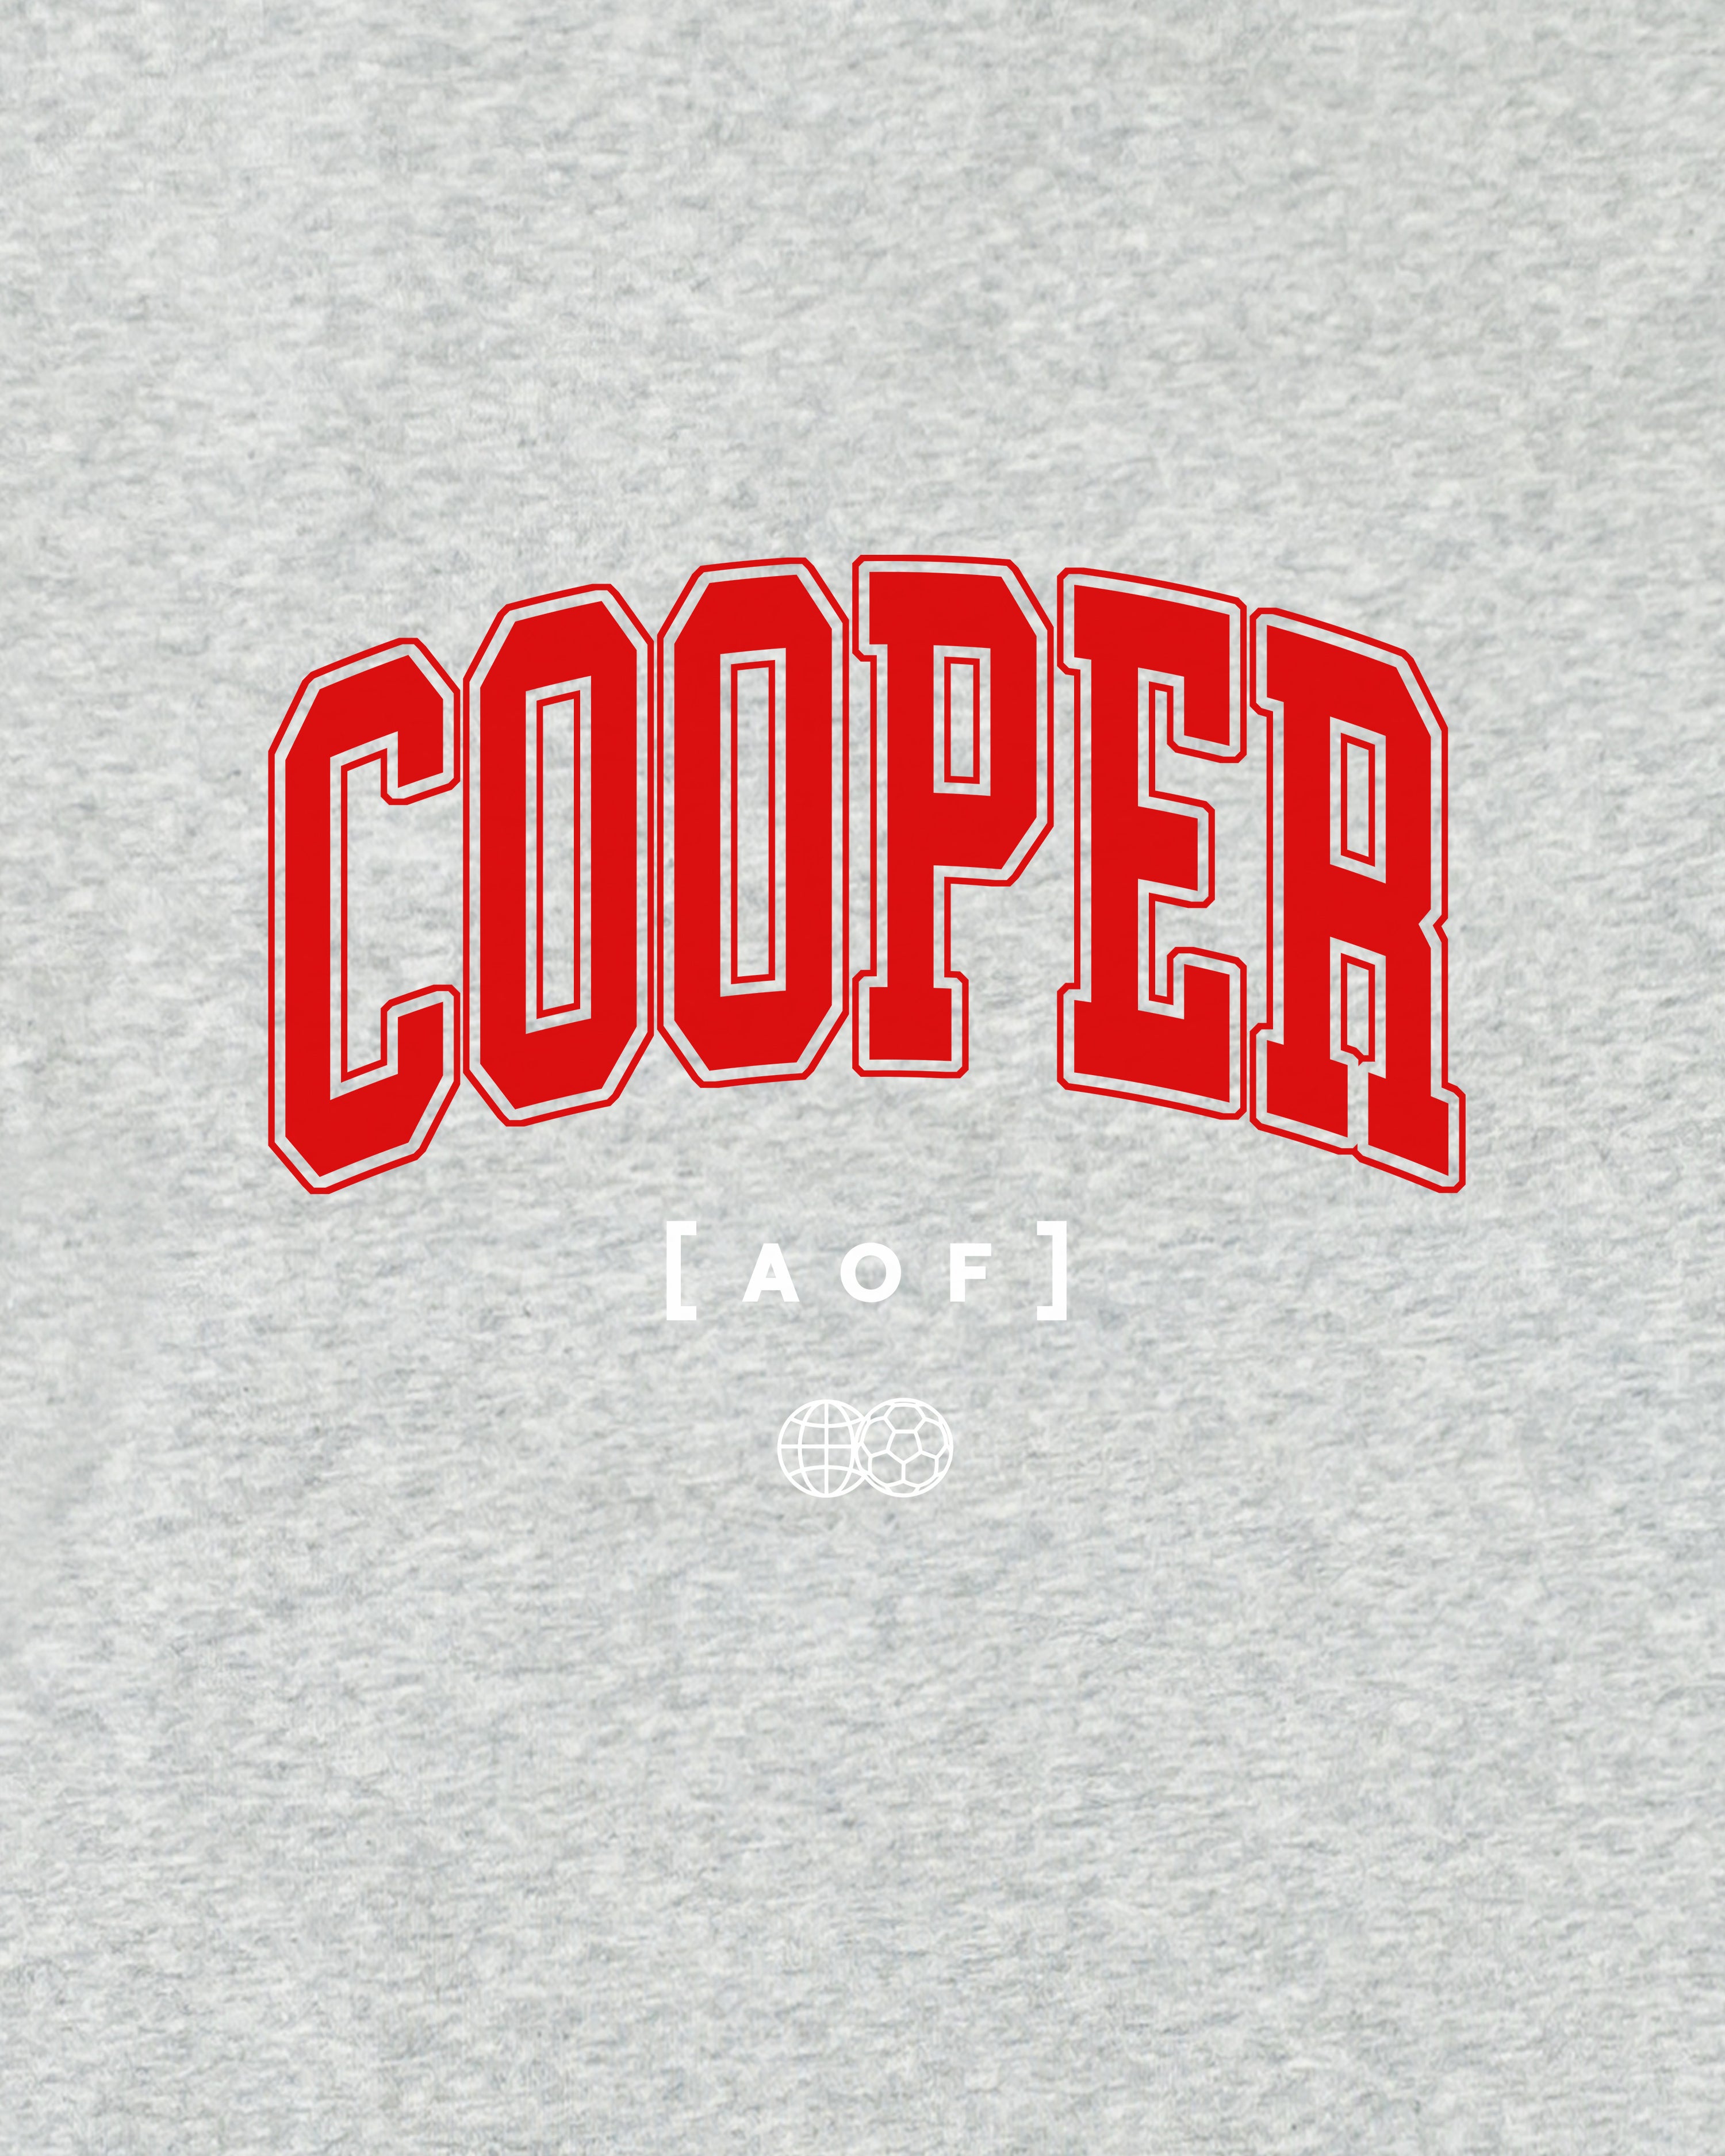 University of Cooper